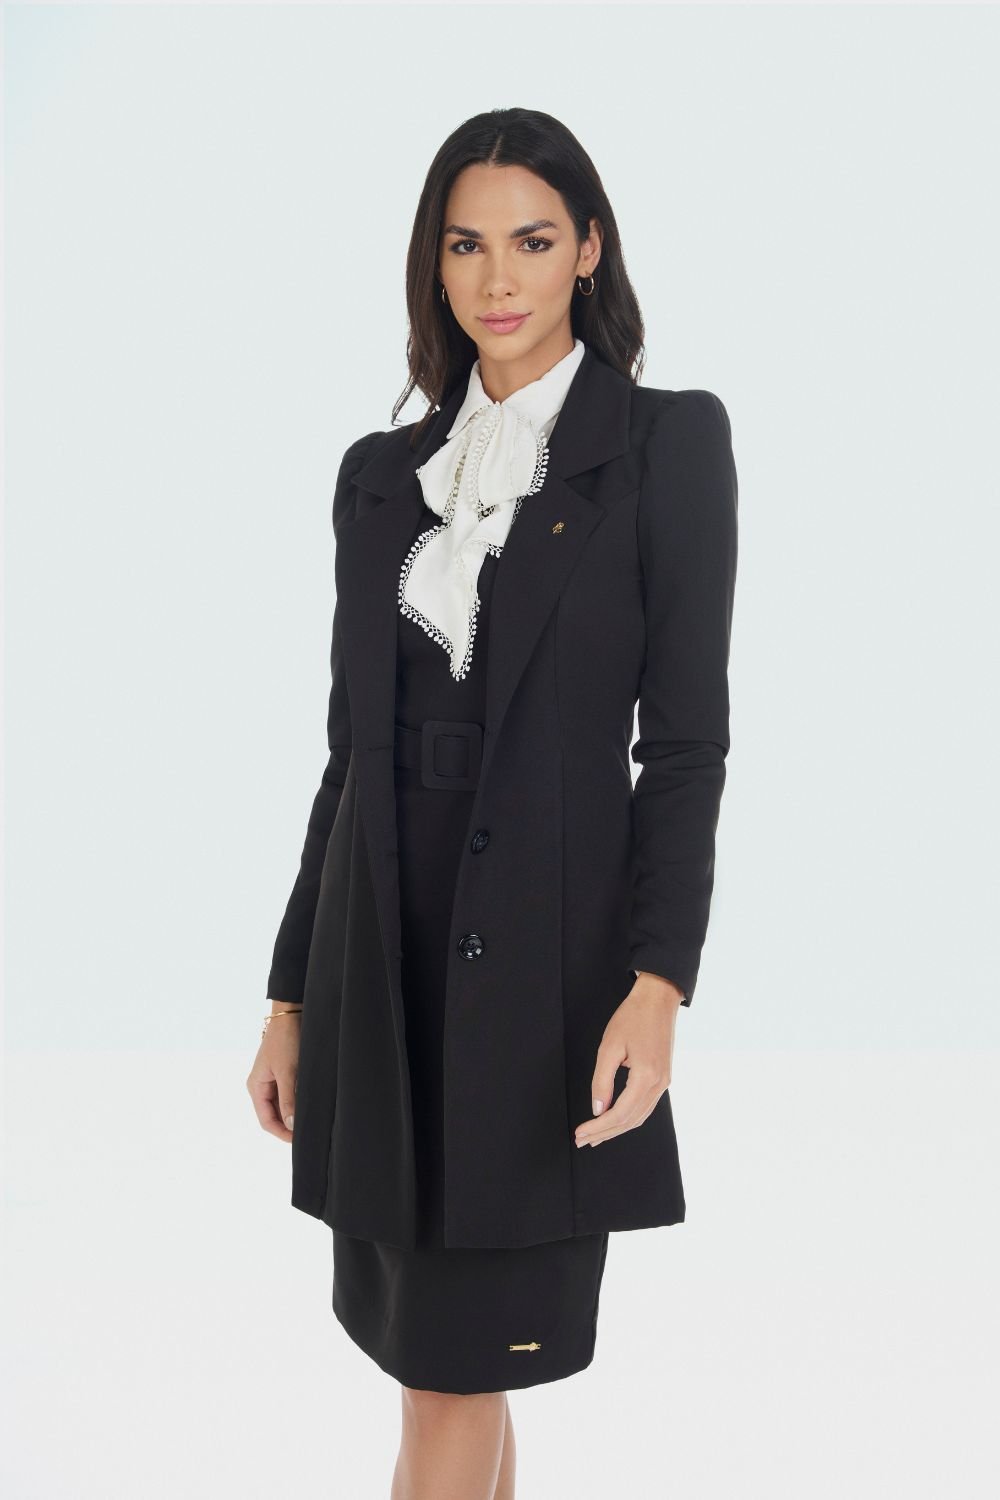 casaco de alfaiataria preto com vestido de alfaiataria preto e camisa branca com laço no pescoço